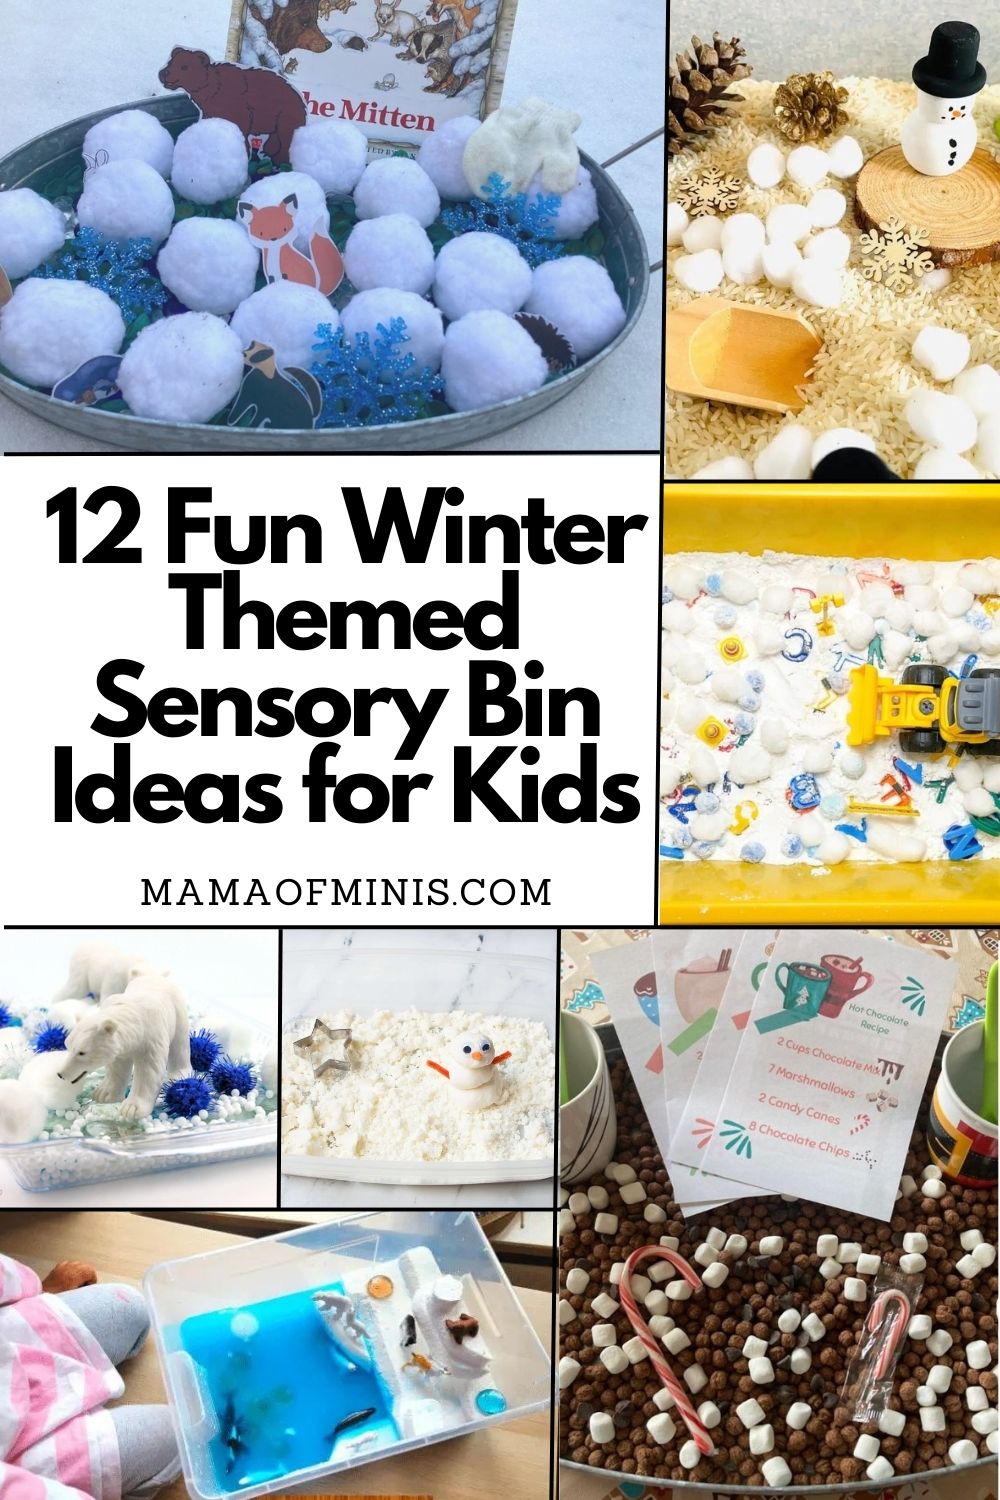 12 Fun Winter Themed Sensory Bin Ideas for Kids